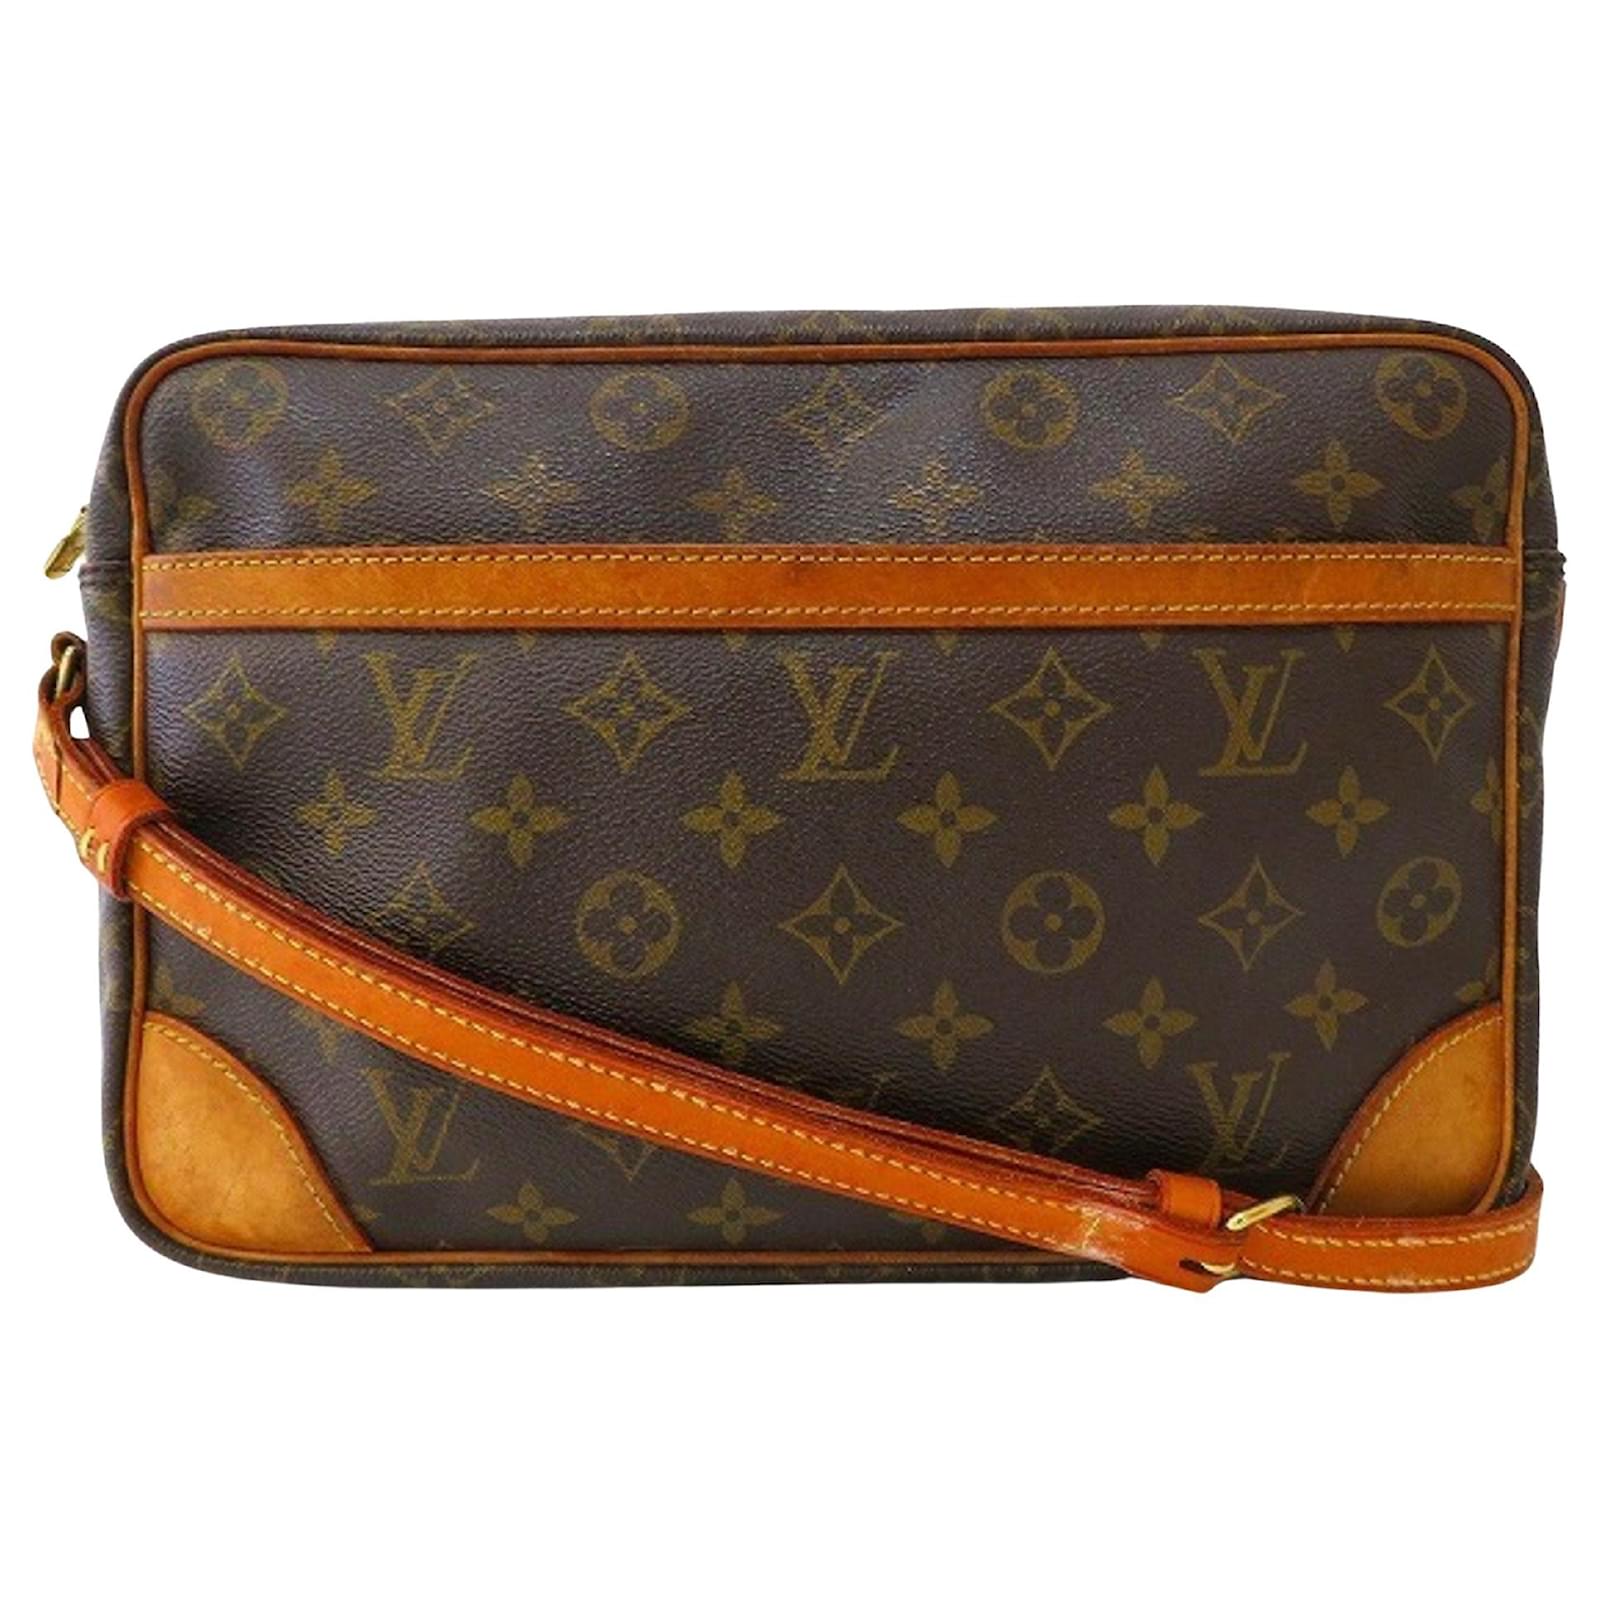 Louis-Vuitton-Epi-Leather-Speedy-35-Boston-Bag-Toledo-Blue-M42995